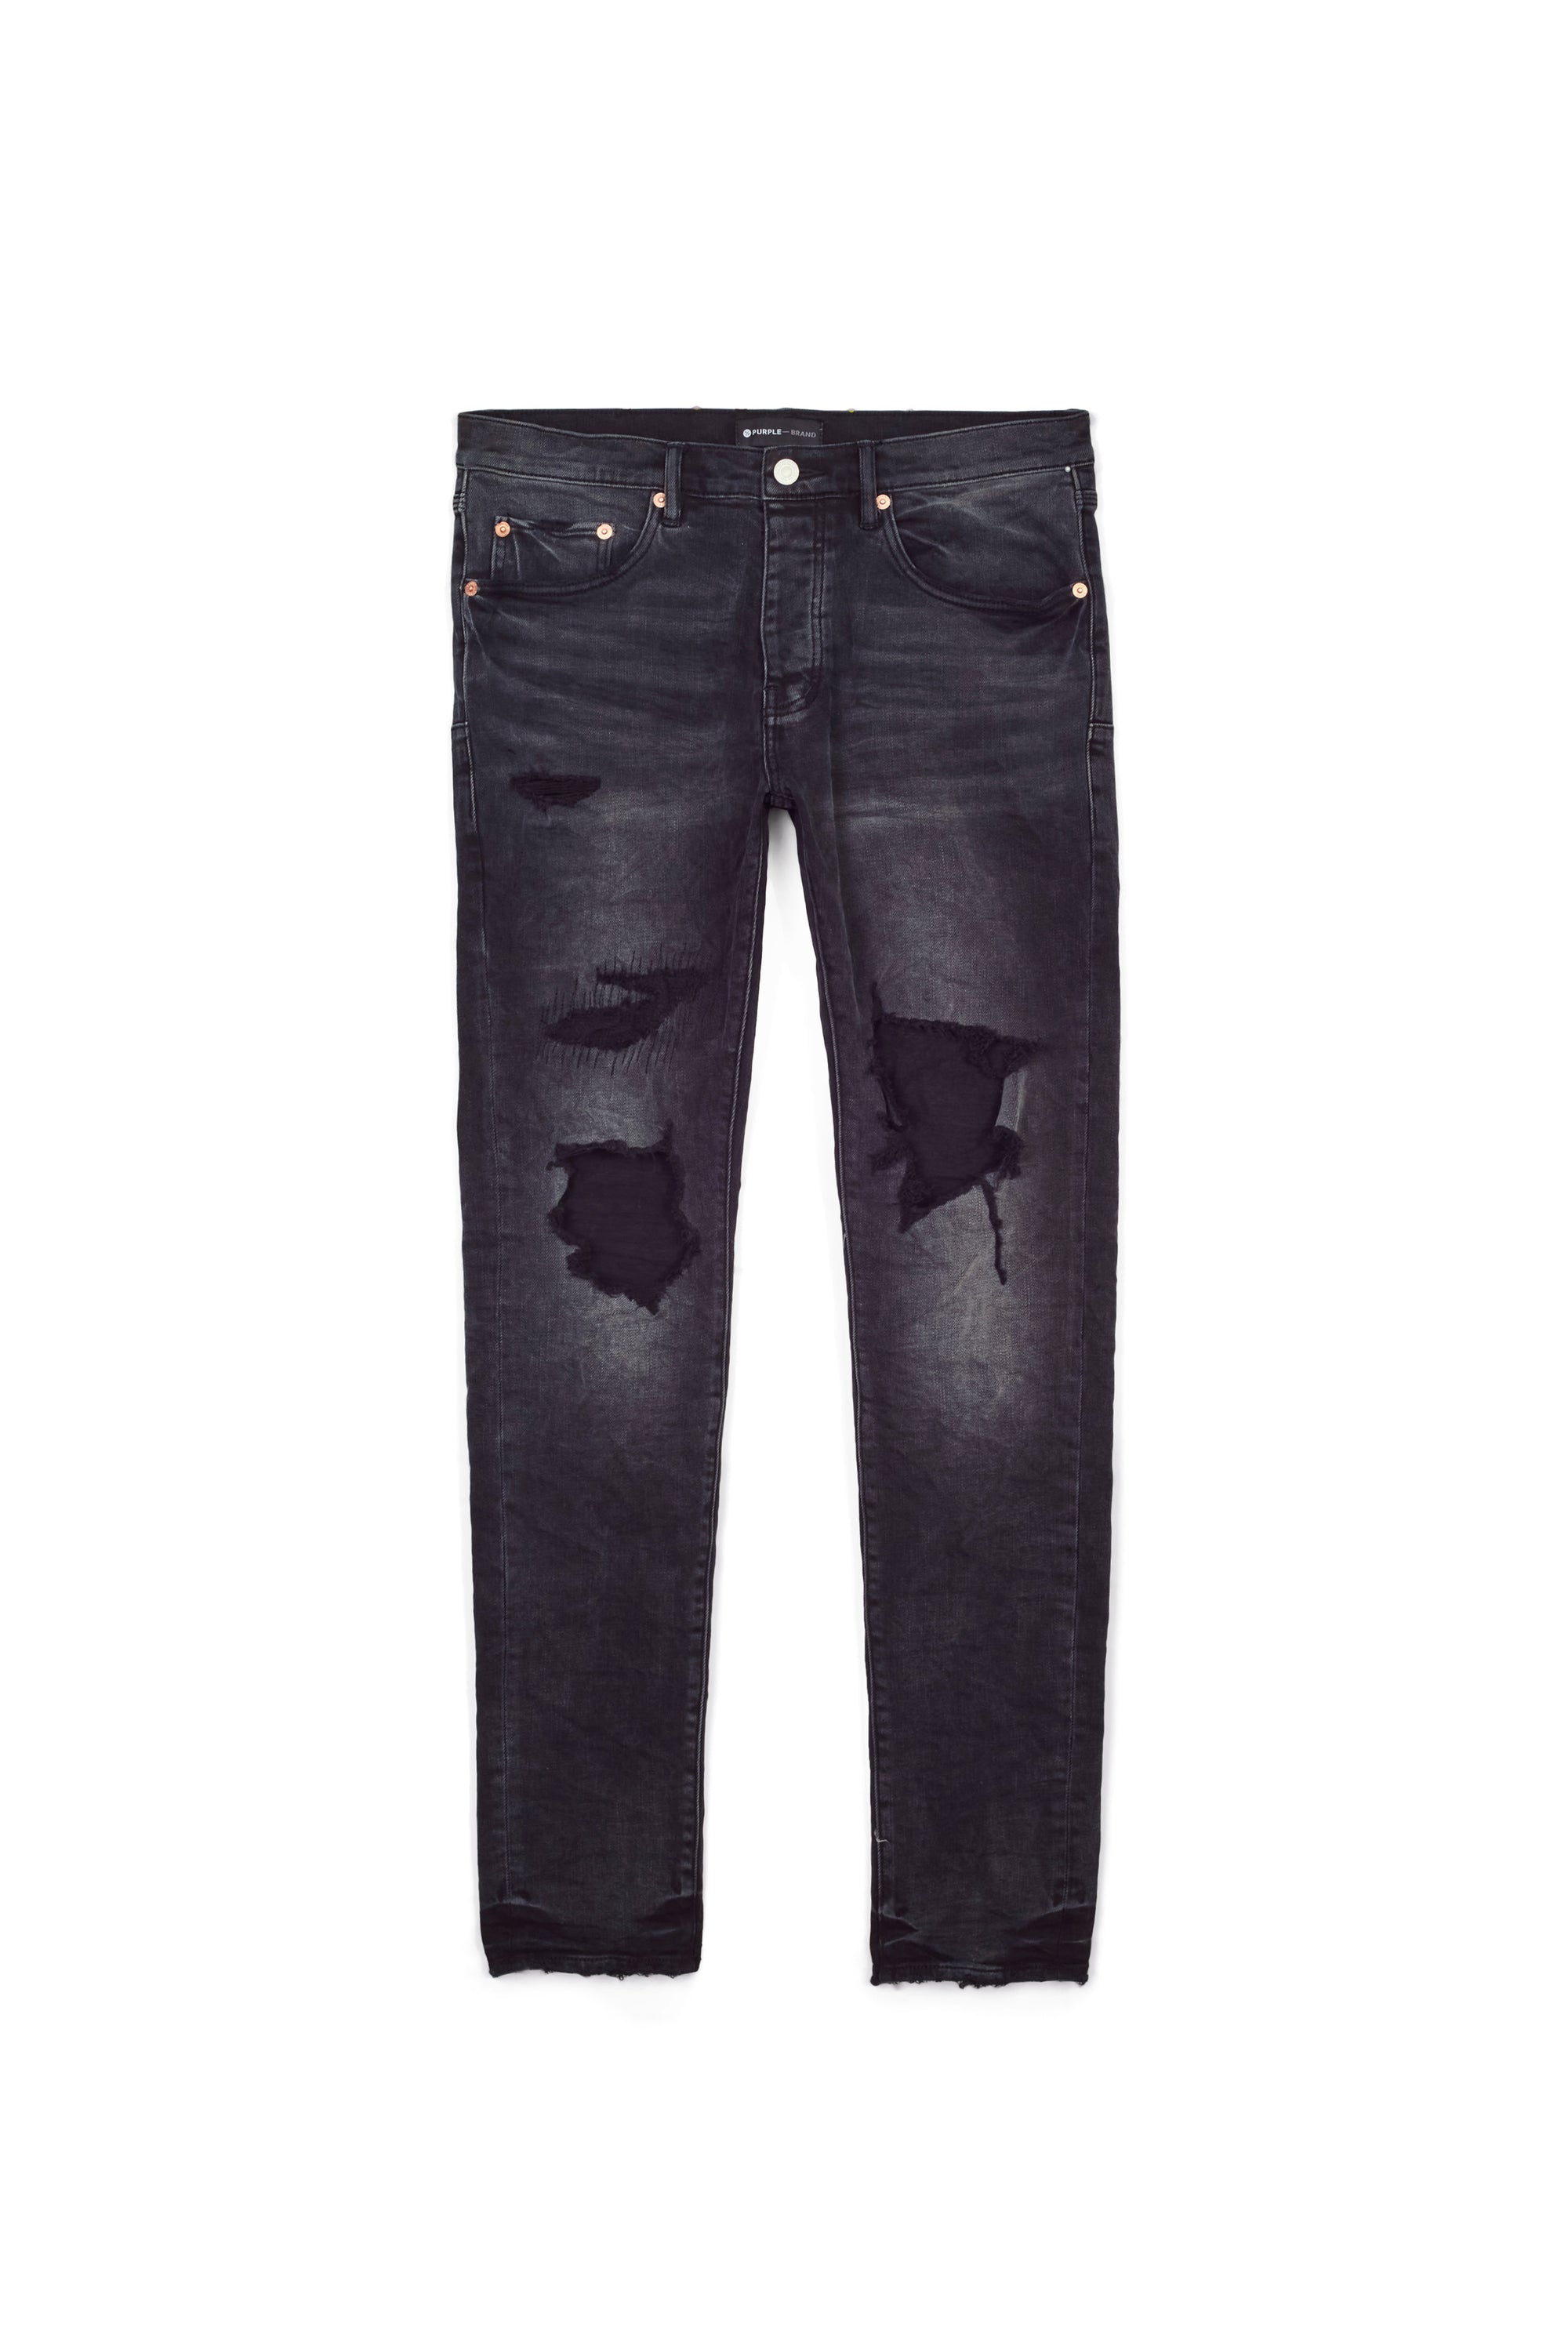 Purple Brand Worn Black Distress Jeans - BLACK - Civilized Nation -  Official Site